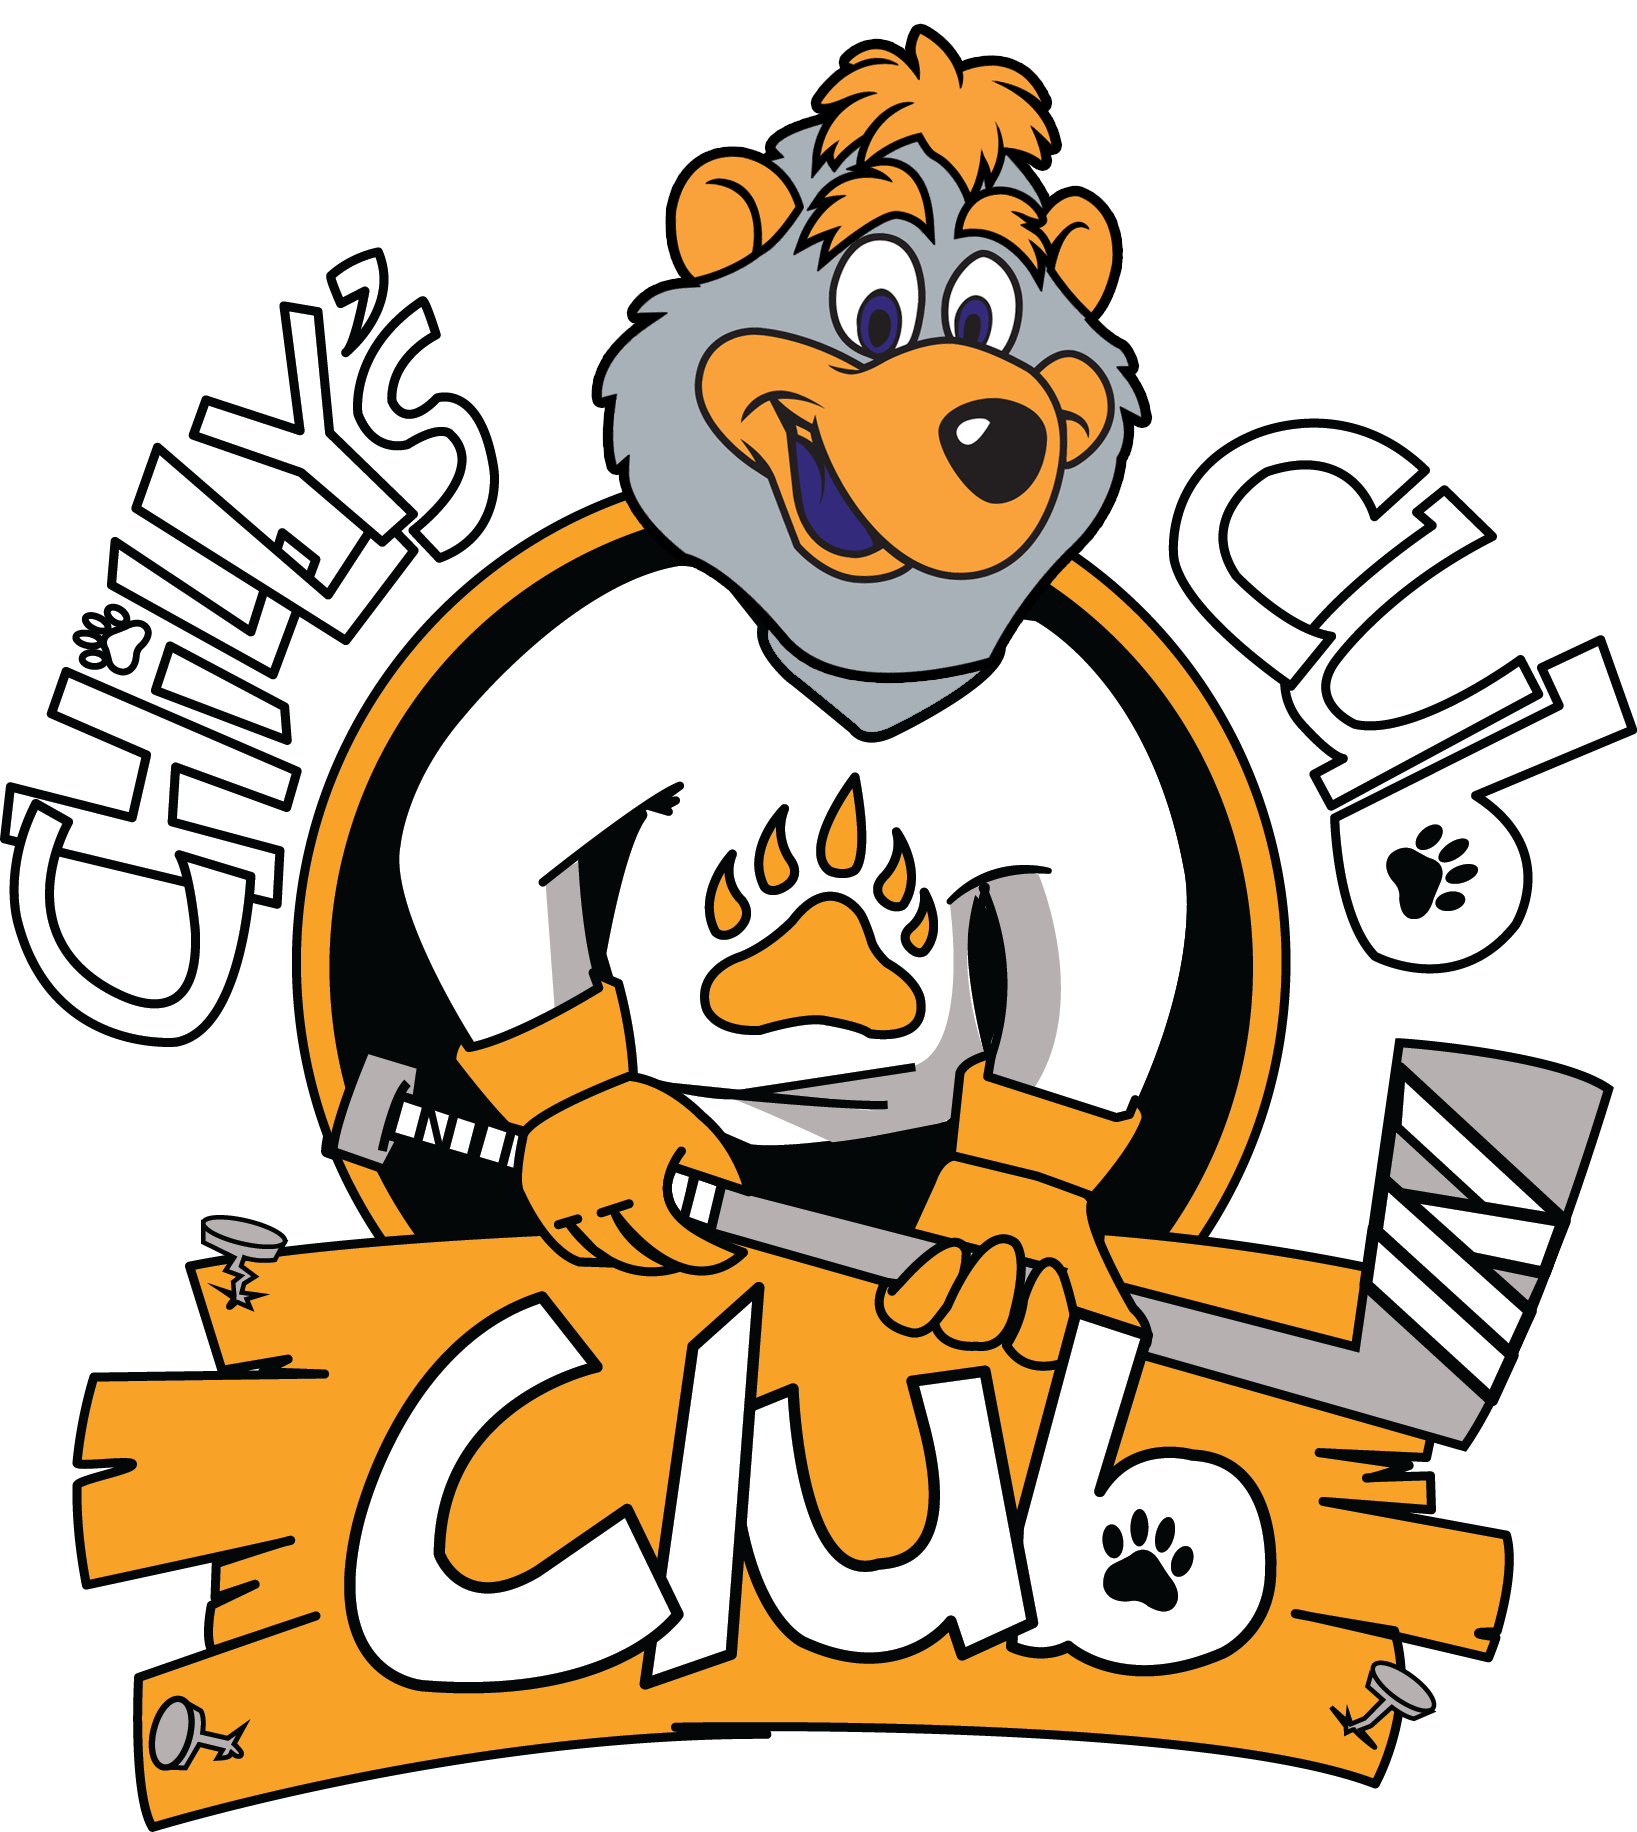 Chillys Cub Club